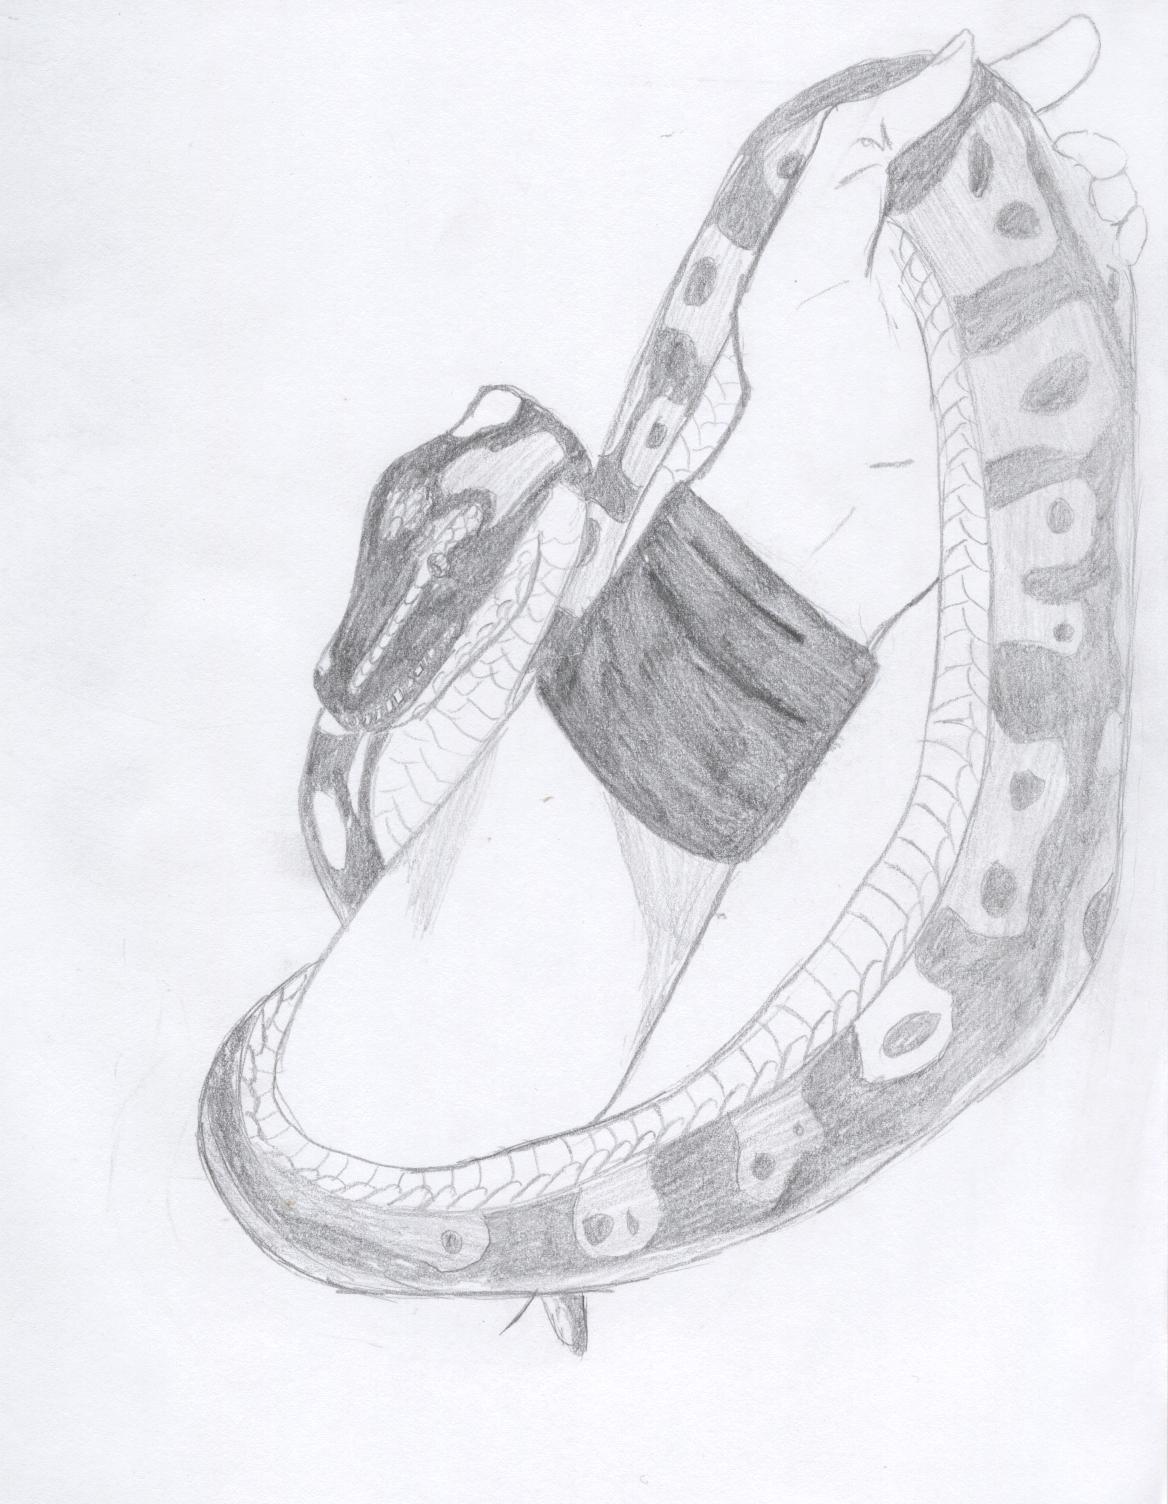 Kiba my snake! by FaustVIII